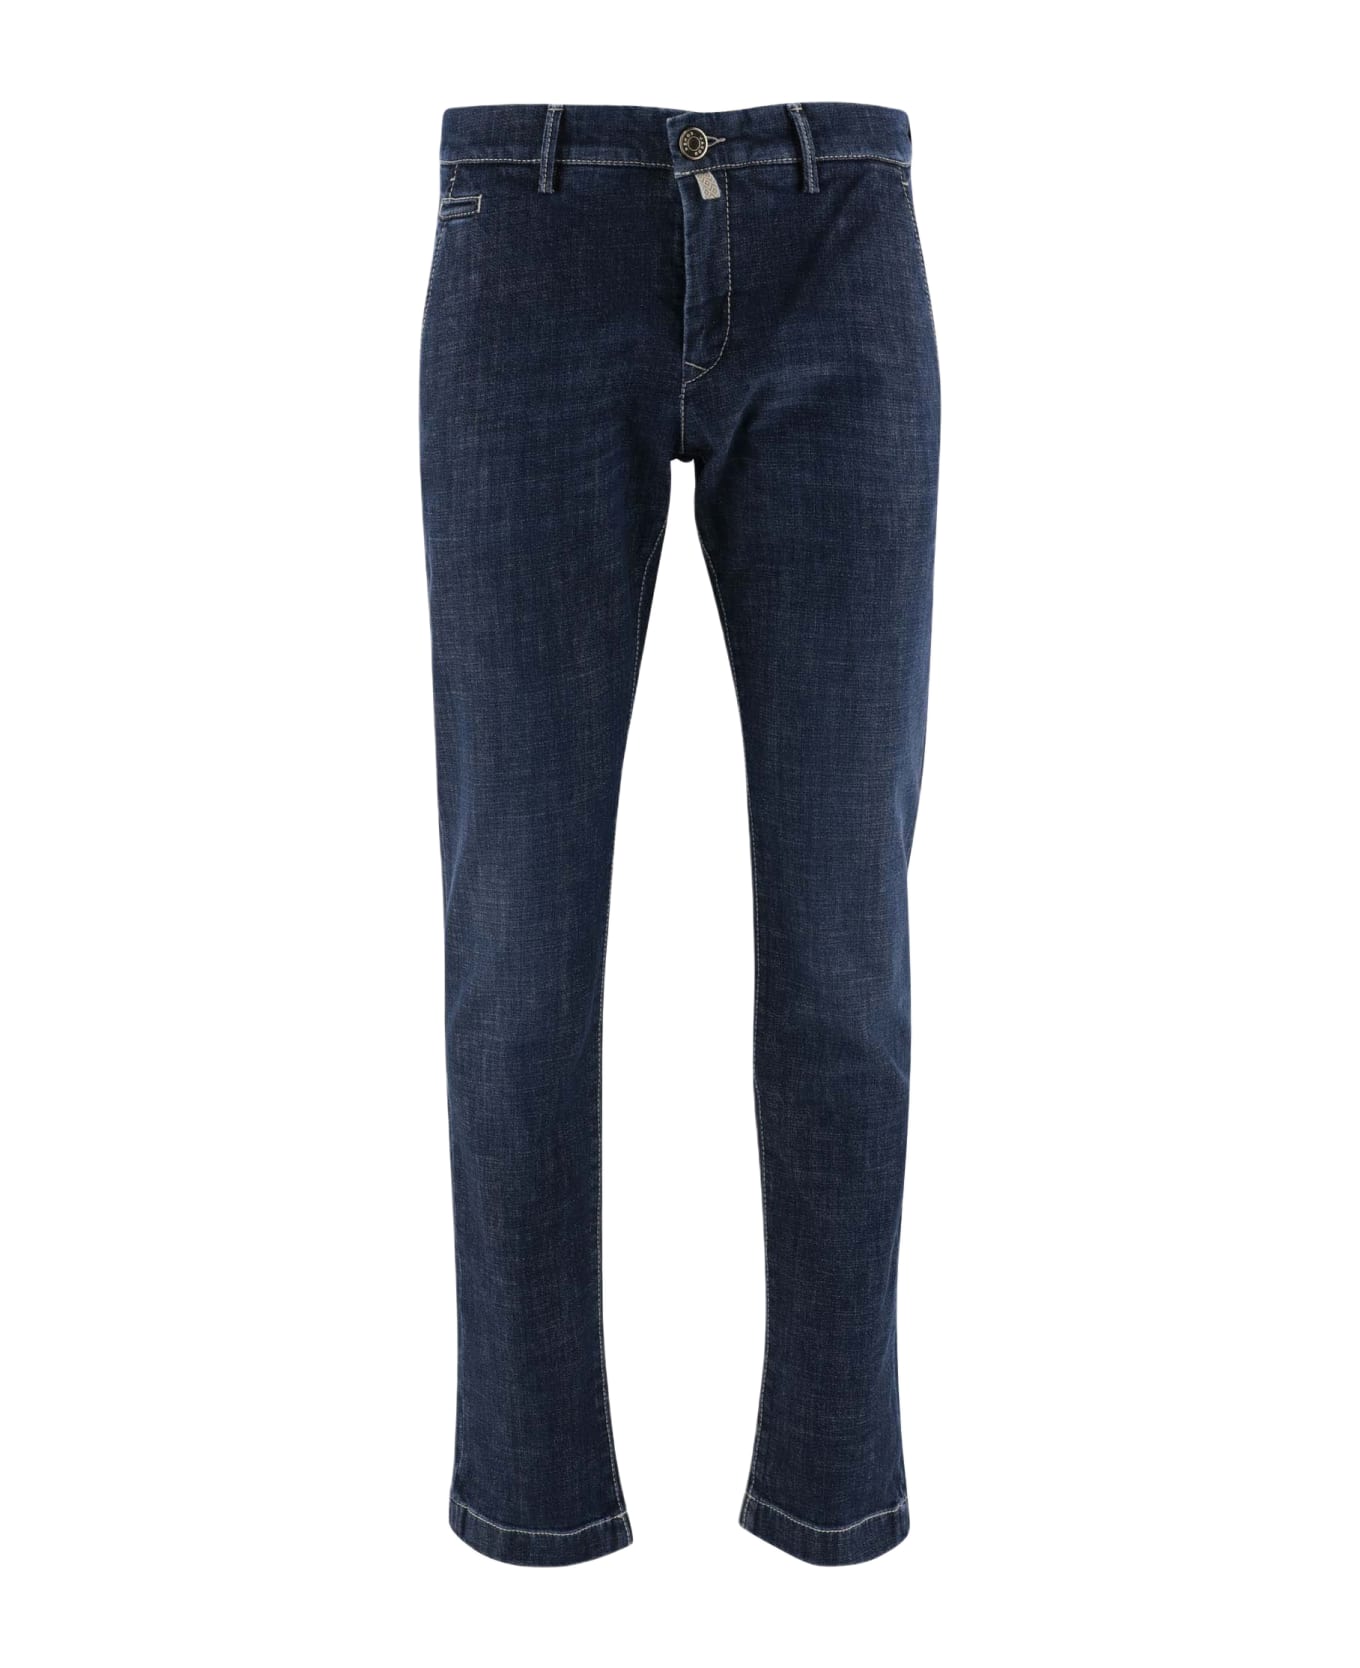 Jacob Cohen Stretch Cotton Denim Jeans Jeans - BLU デニム